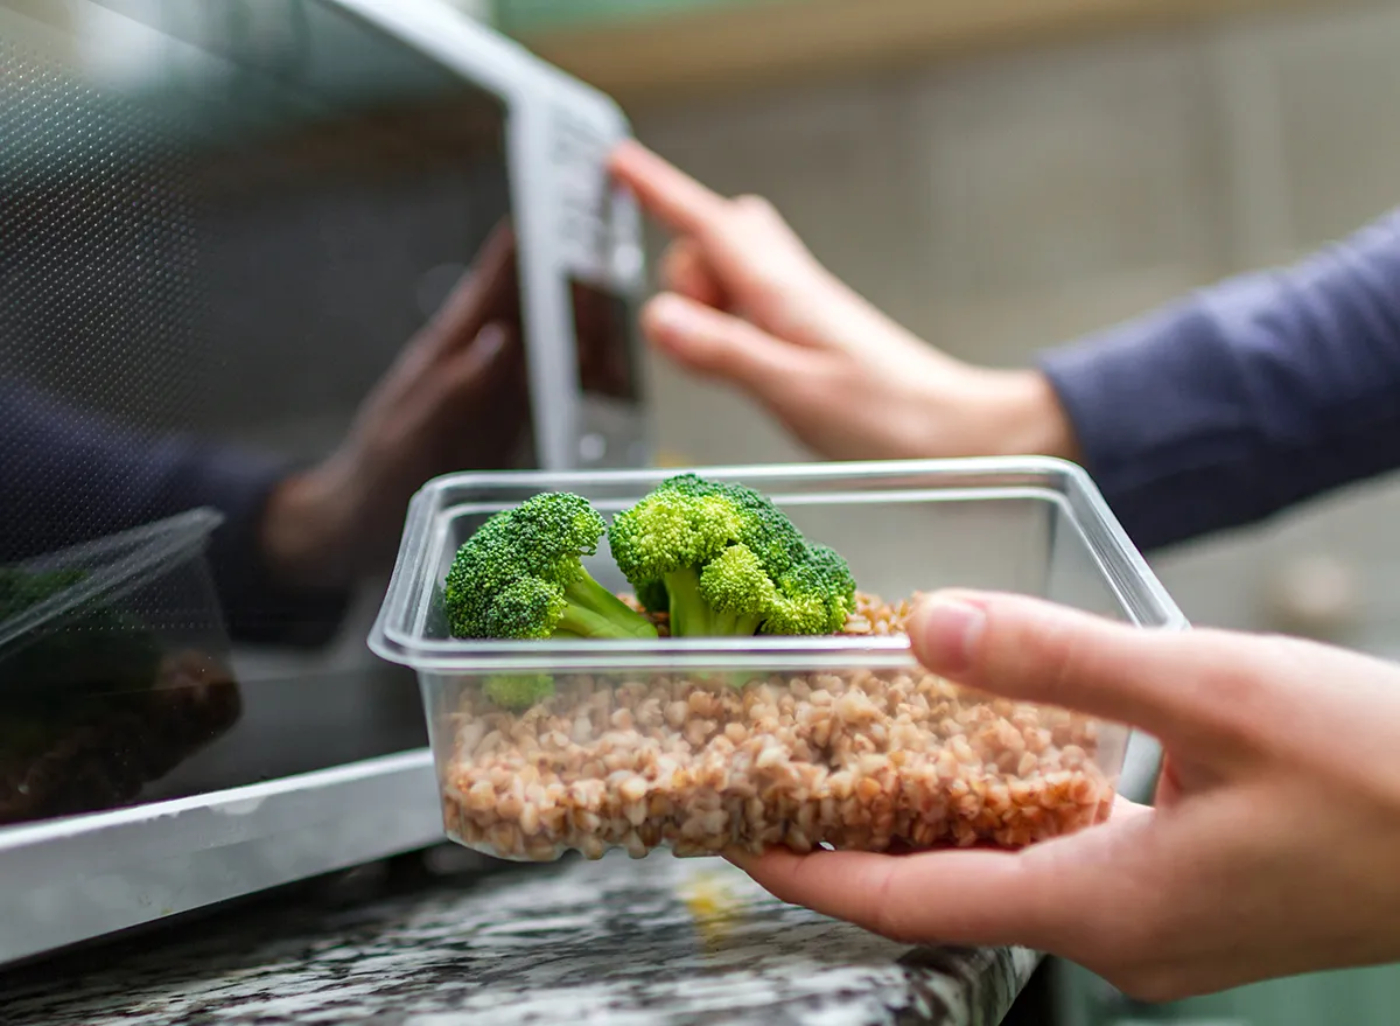 ما خطورة تسخين الطعام في الميكروويف في وعاء بلاستيكي؟